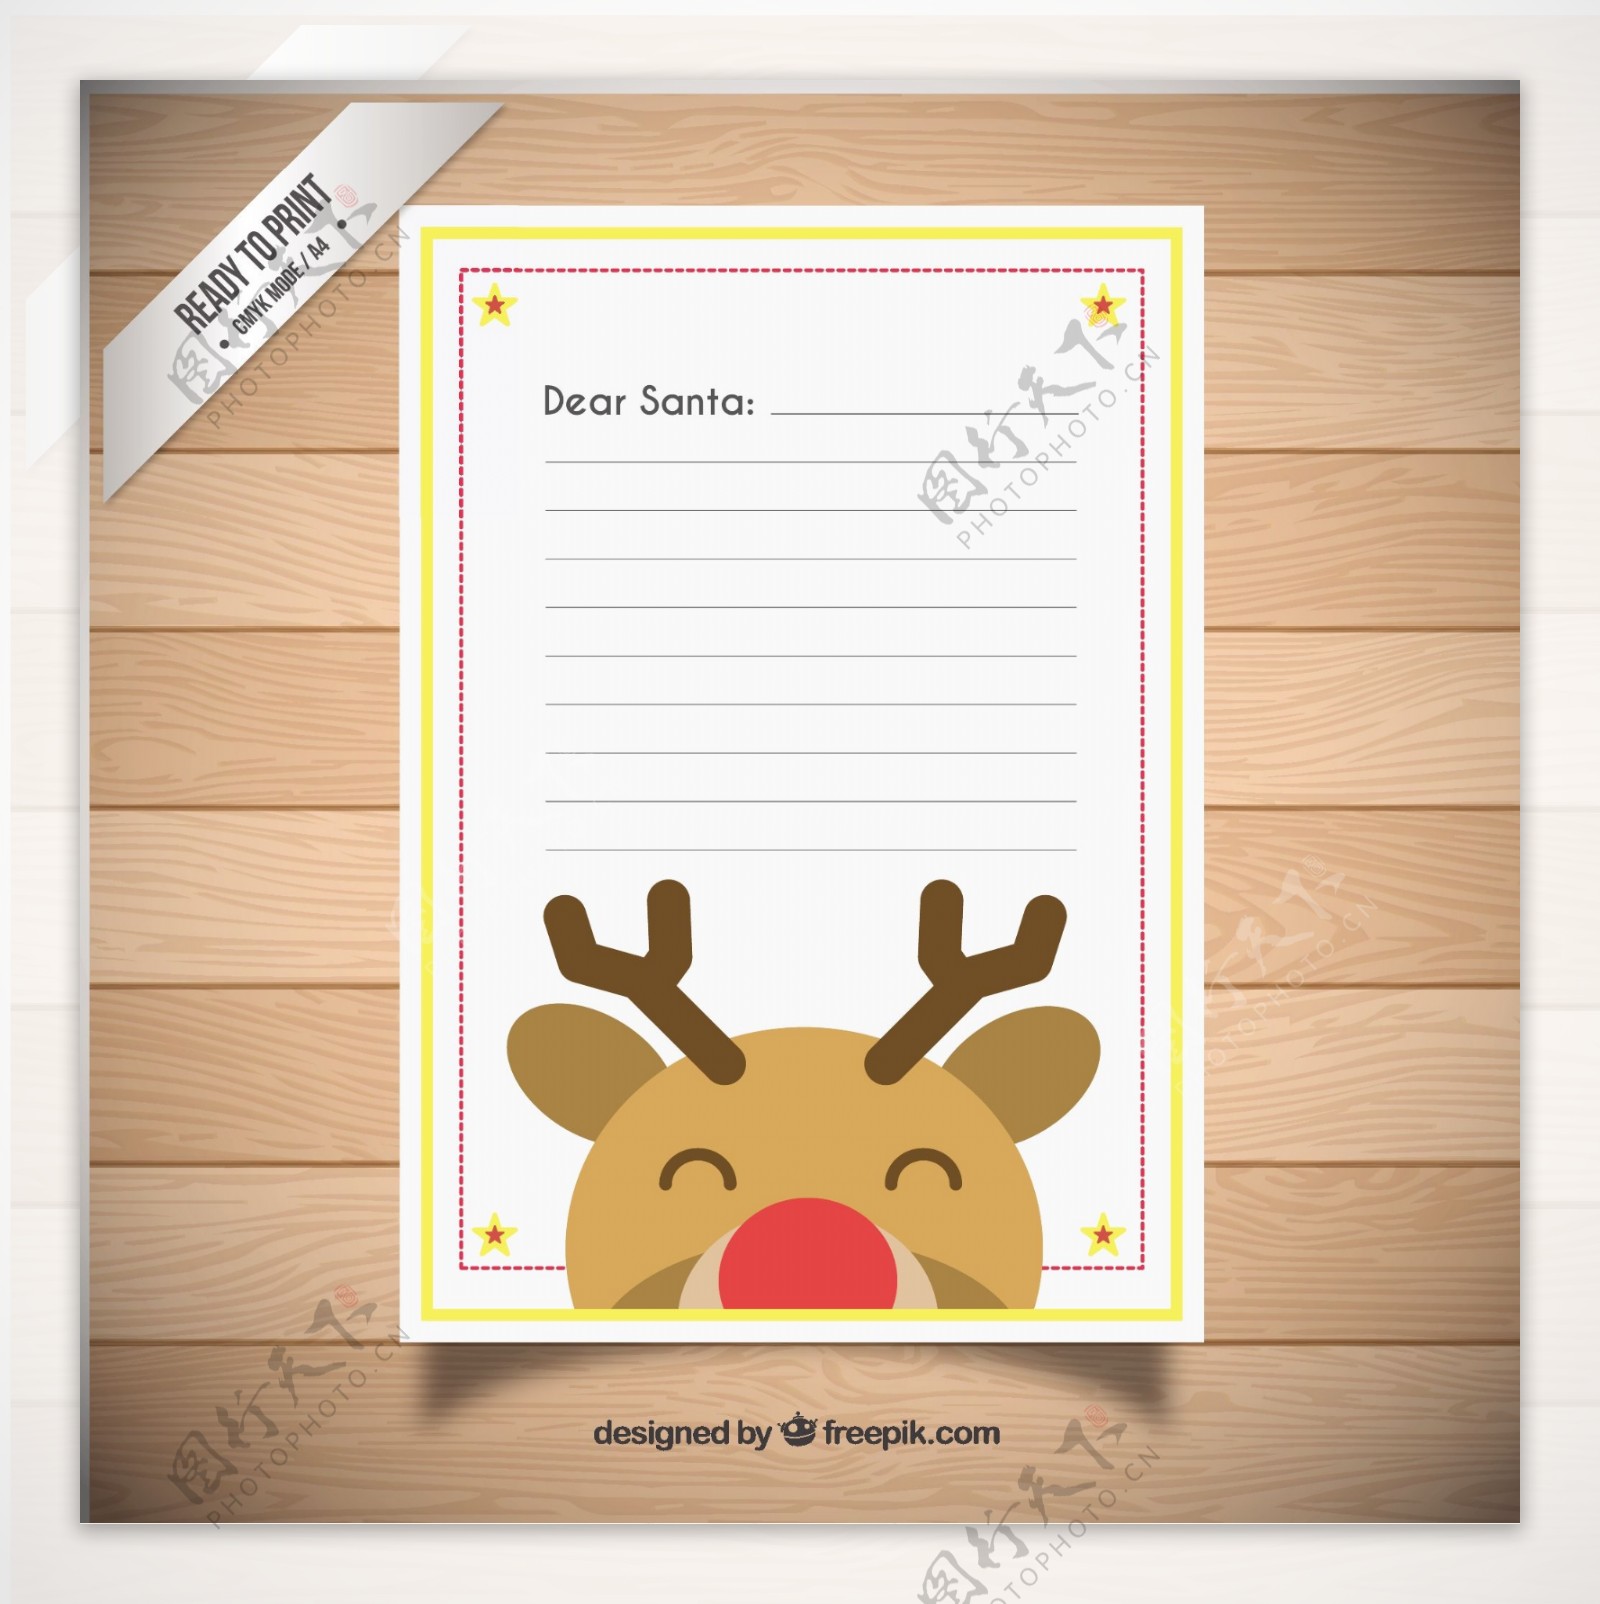 与一个可爱的驯鹿圣诞信